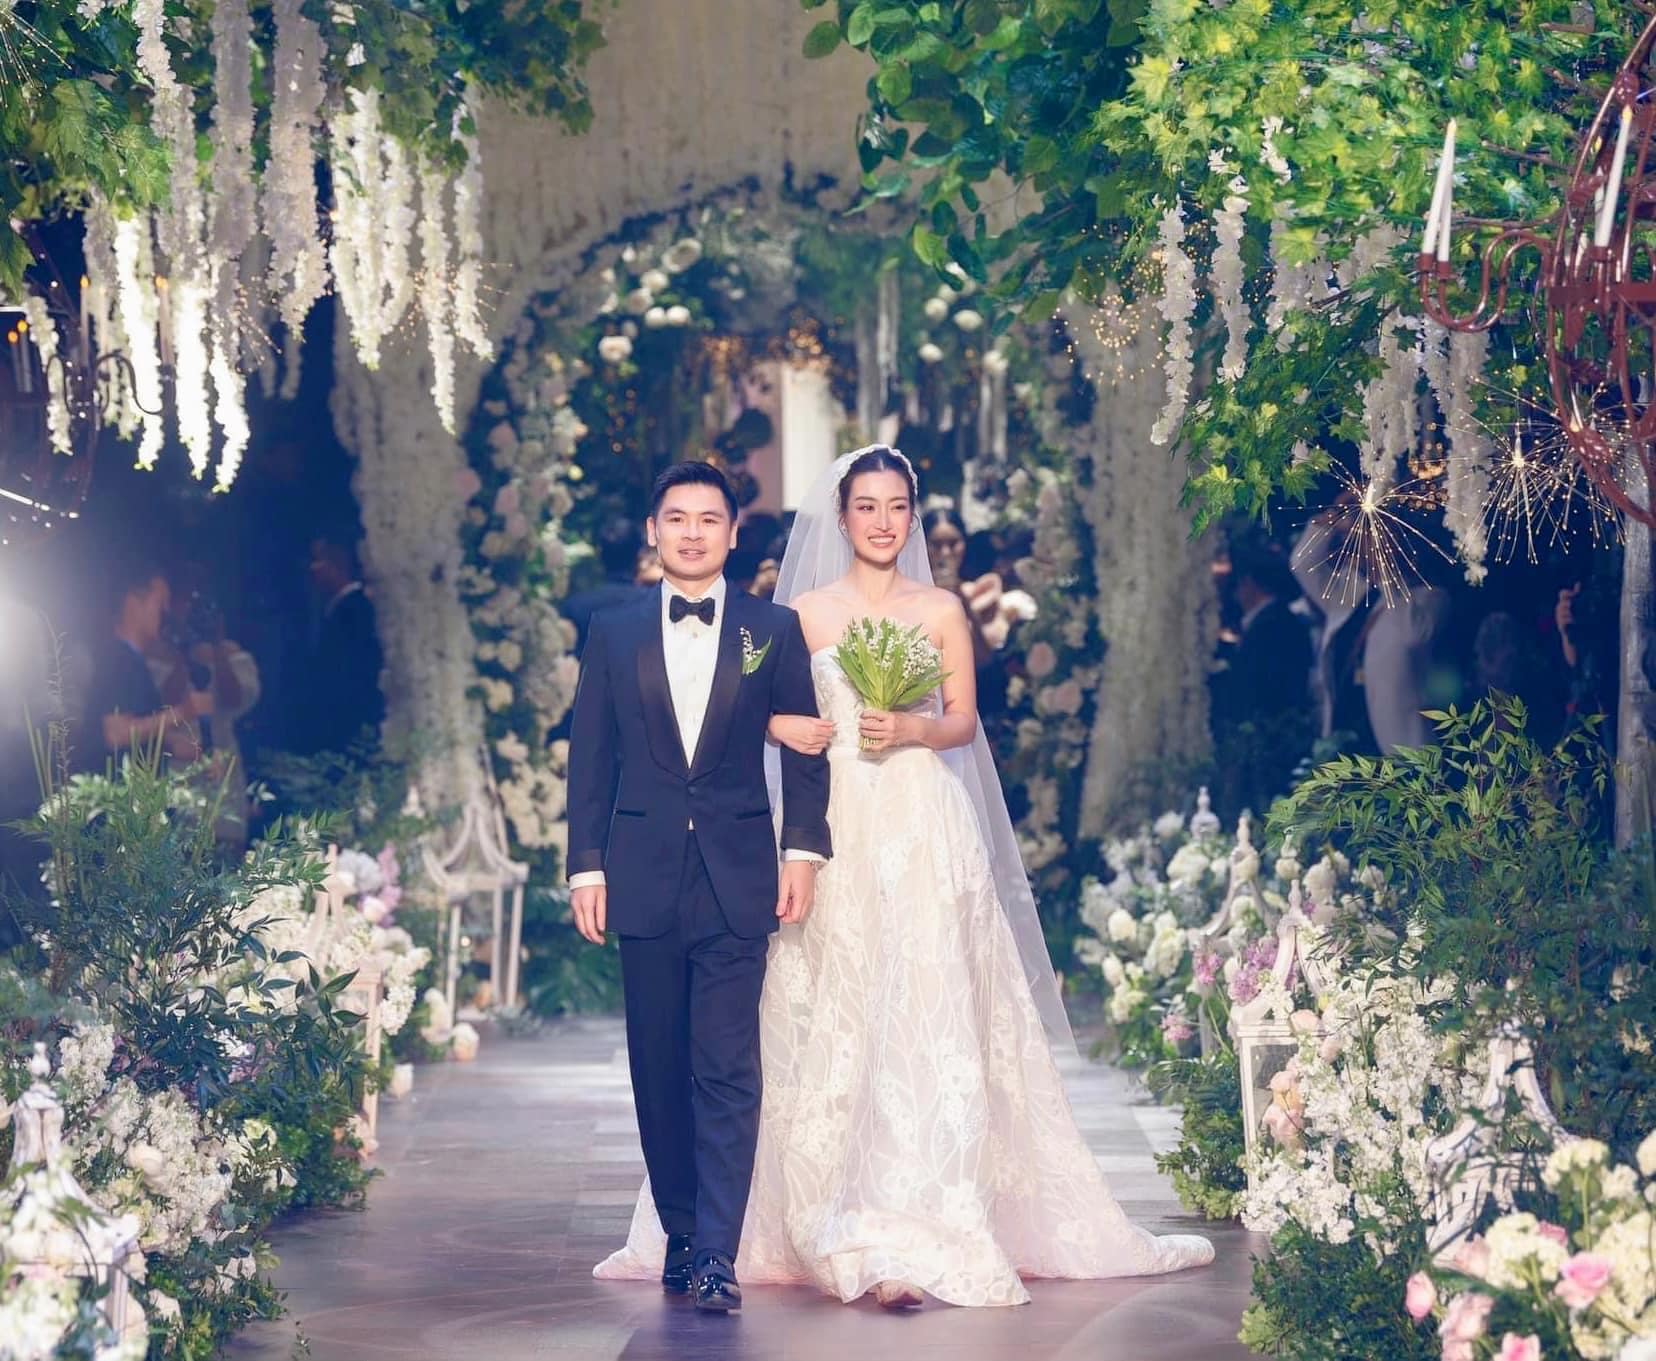 Đám cưới của Đỗ Vinh Quang và Hoa hậu Đỗ Mỹ Linh được tổ chức vào ngày 23/10 tại một trung tâm tiệc cưới nằm trên phố Chương Dương Độ, quận Hoàn Kiếm, Hà Nội